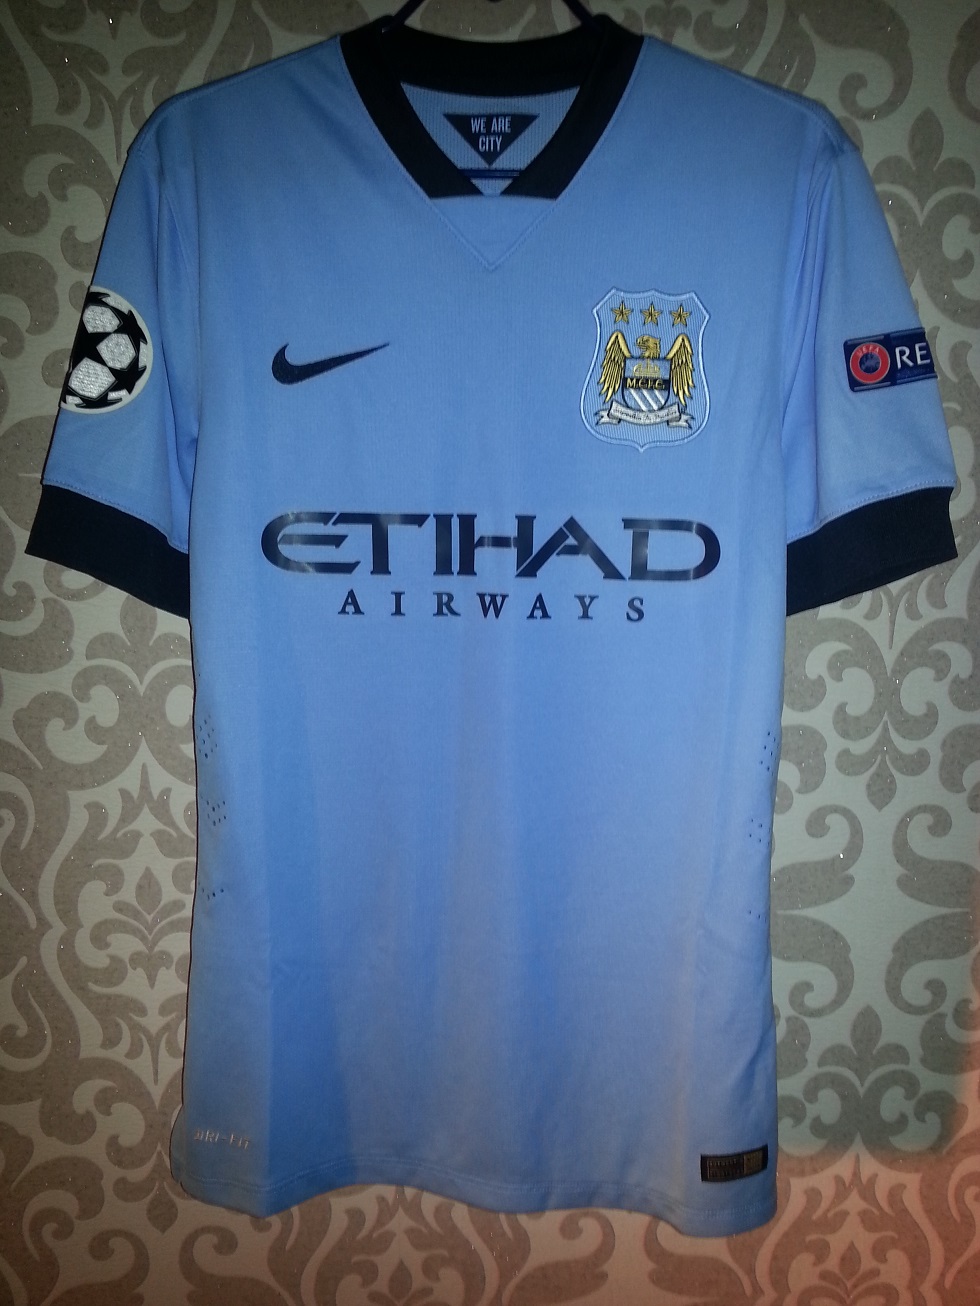 Manchester City Home maglia di calcio 2014 - 2015. Sponsored by Etihad